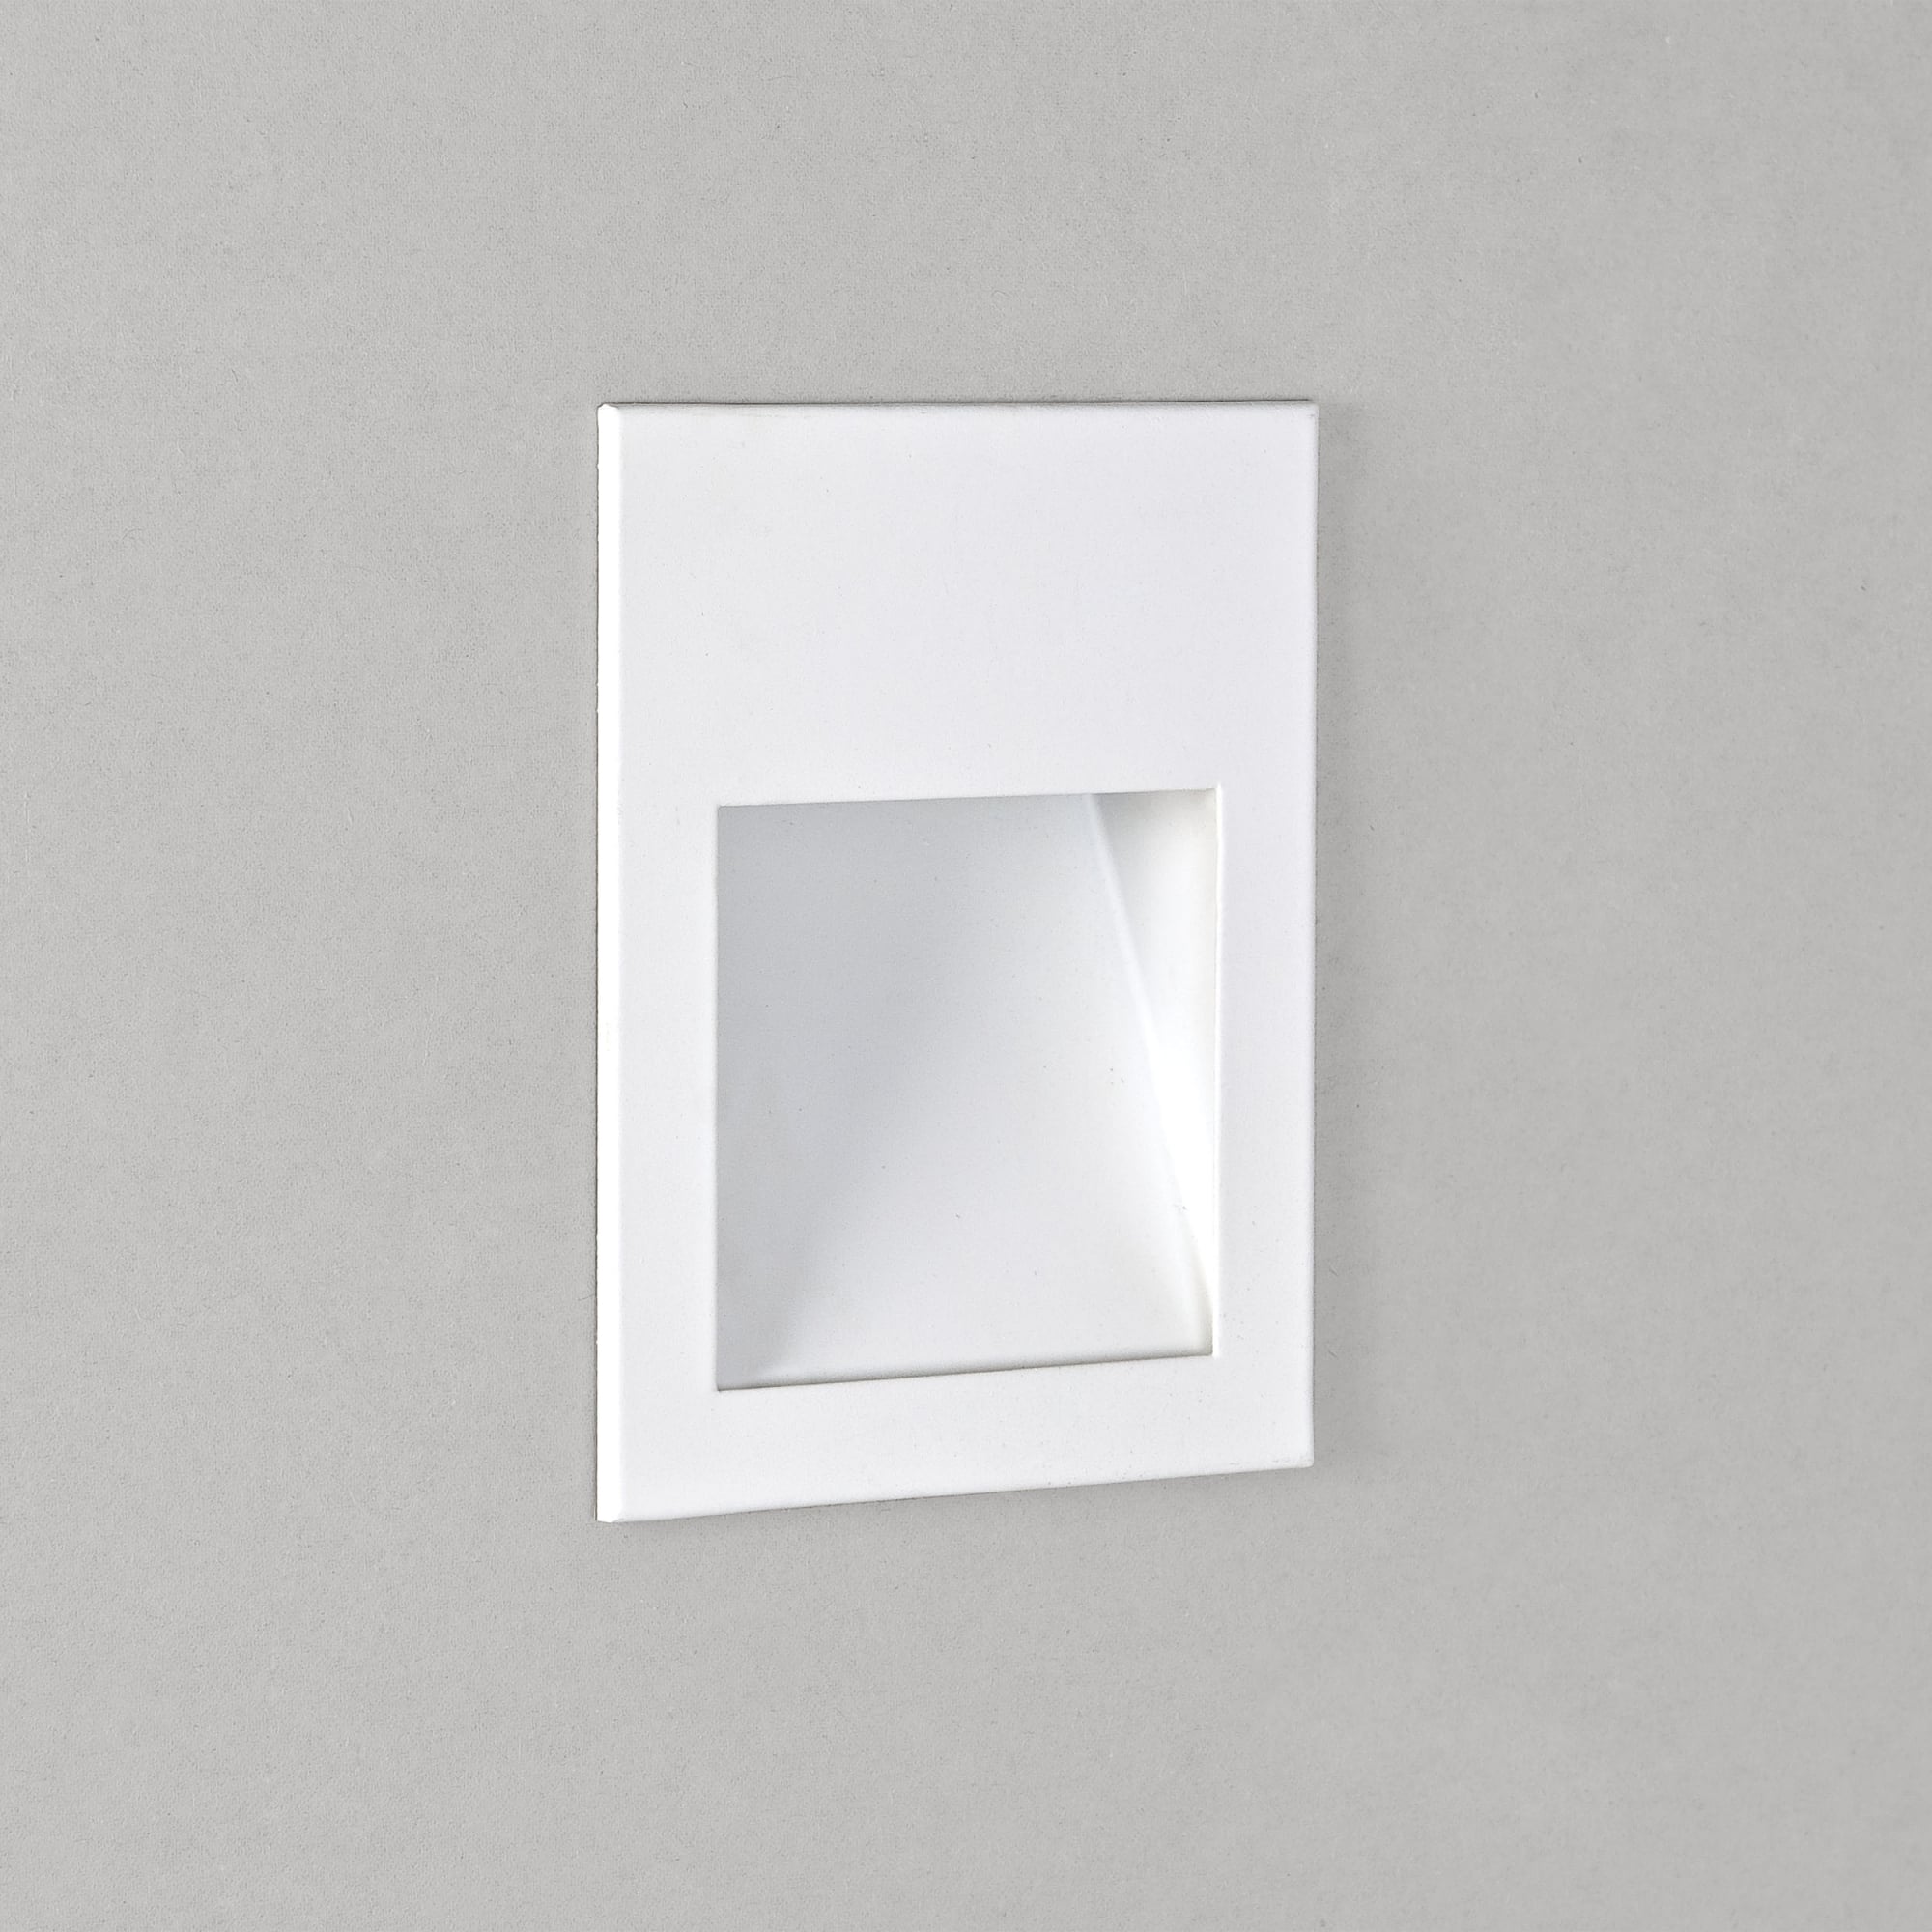 Borgo Modern White Stainless Steel Wall LED Light